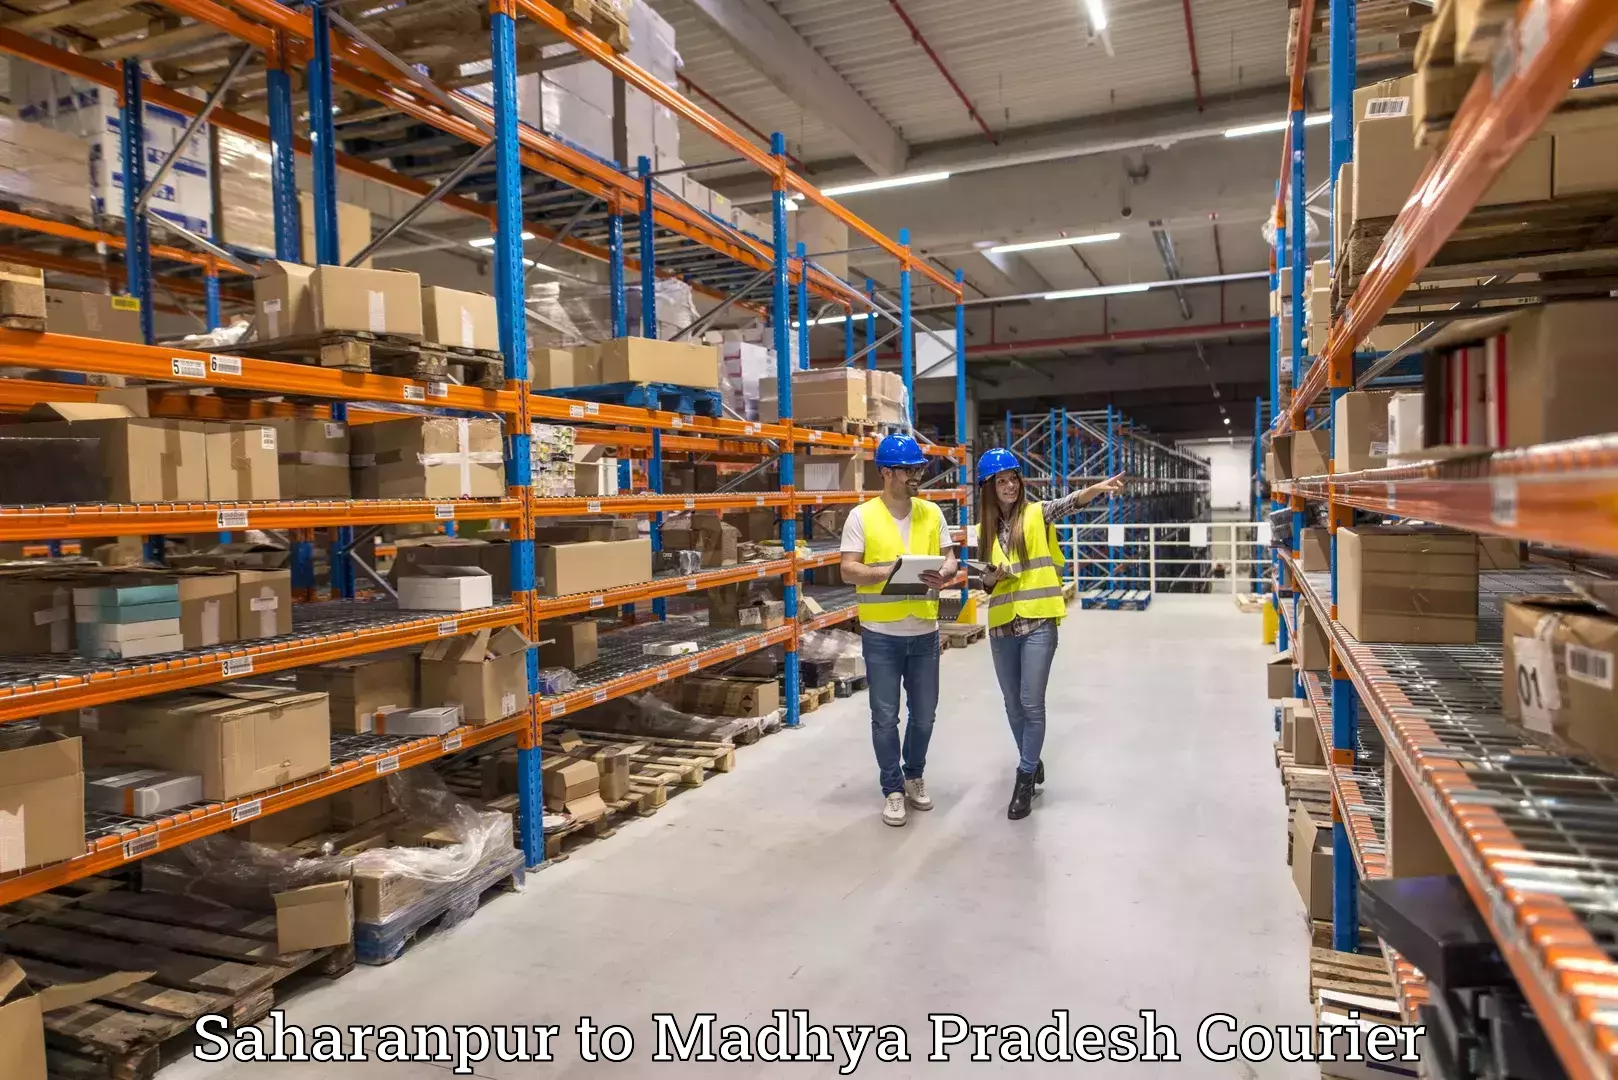 Customer-centric shipping in Saharanpur to Bareli